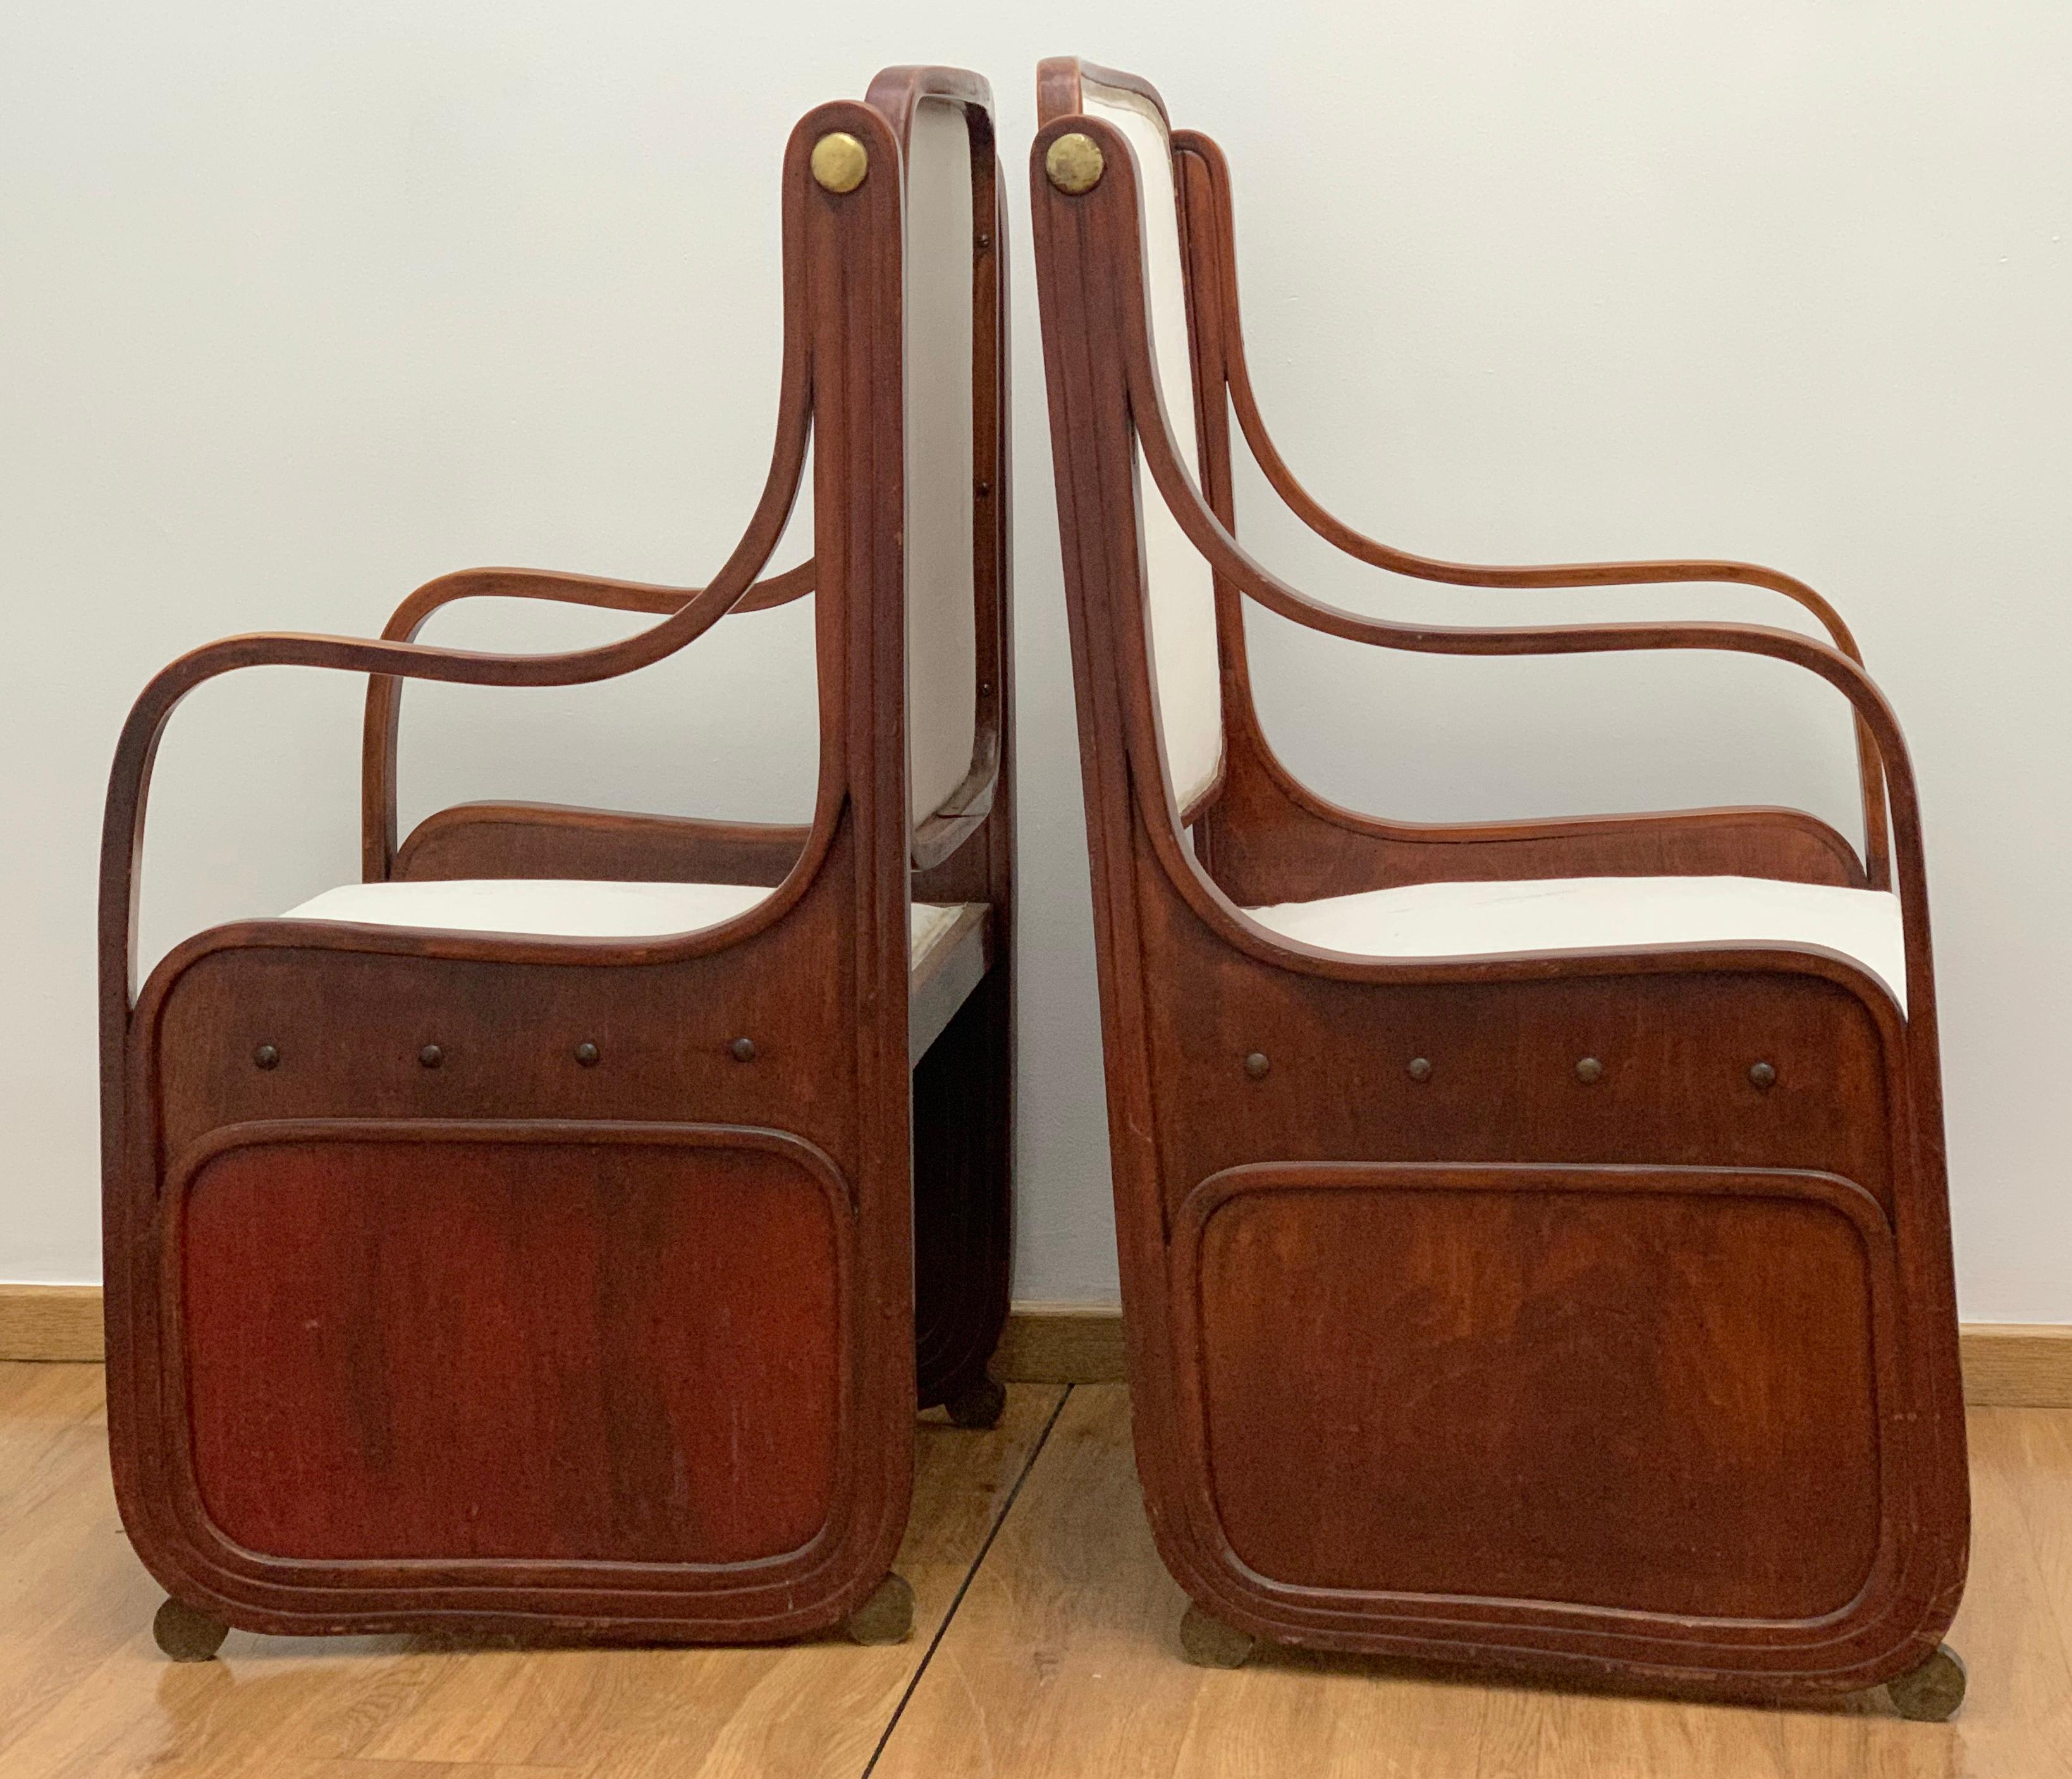 Paire de fauteuils en bois courbé de Koloman Moser, sécession viennoise, vers 1900.